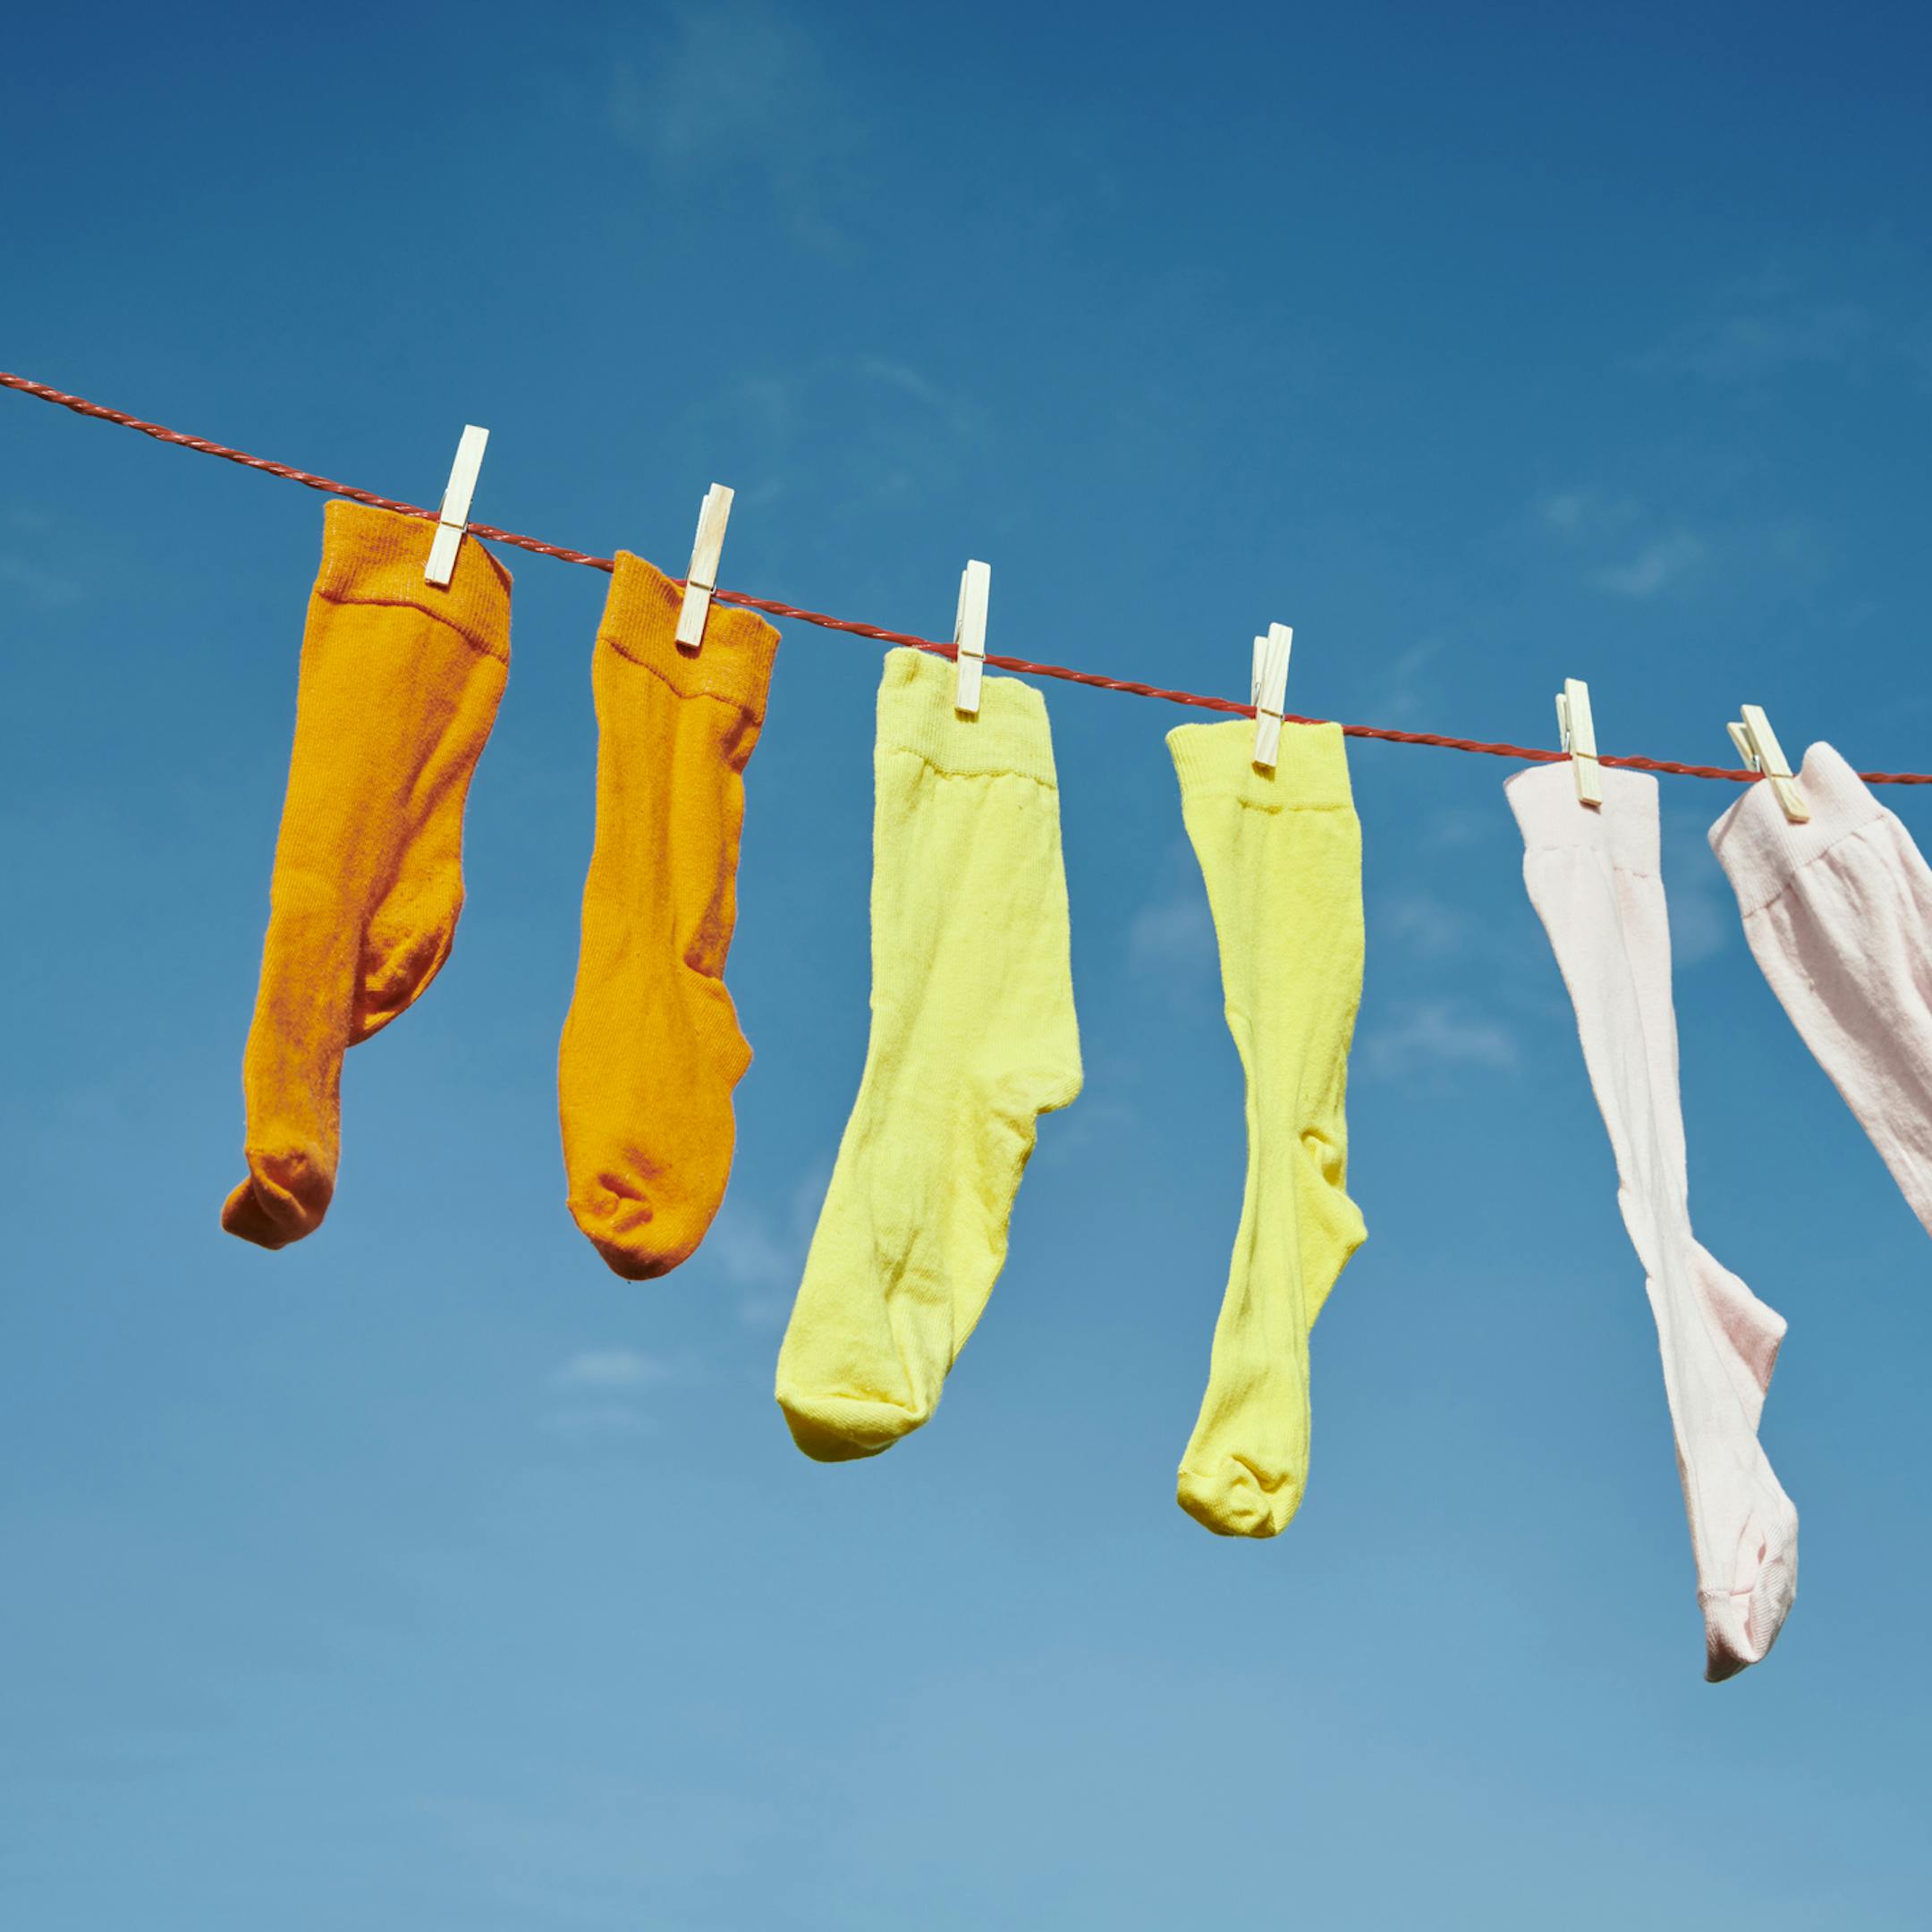 Chaussettes colorées séchant au soleil sur un fil